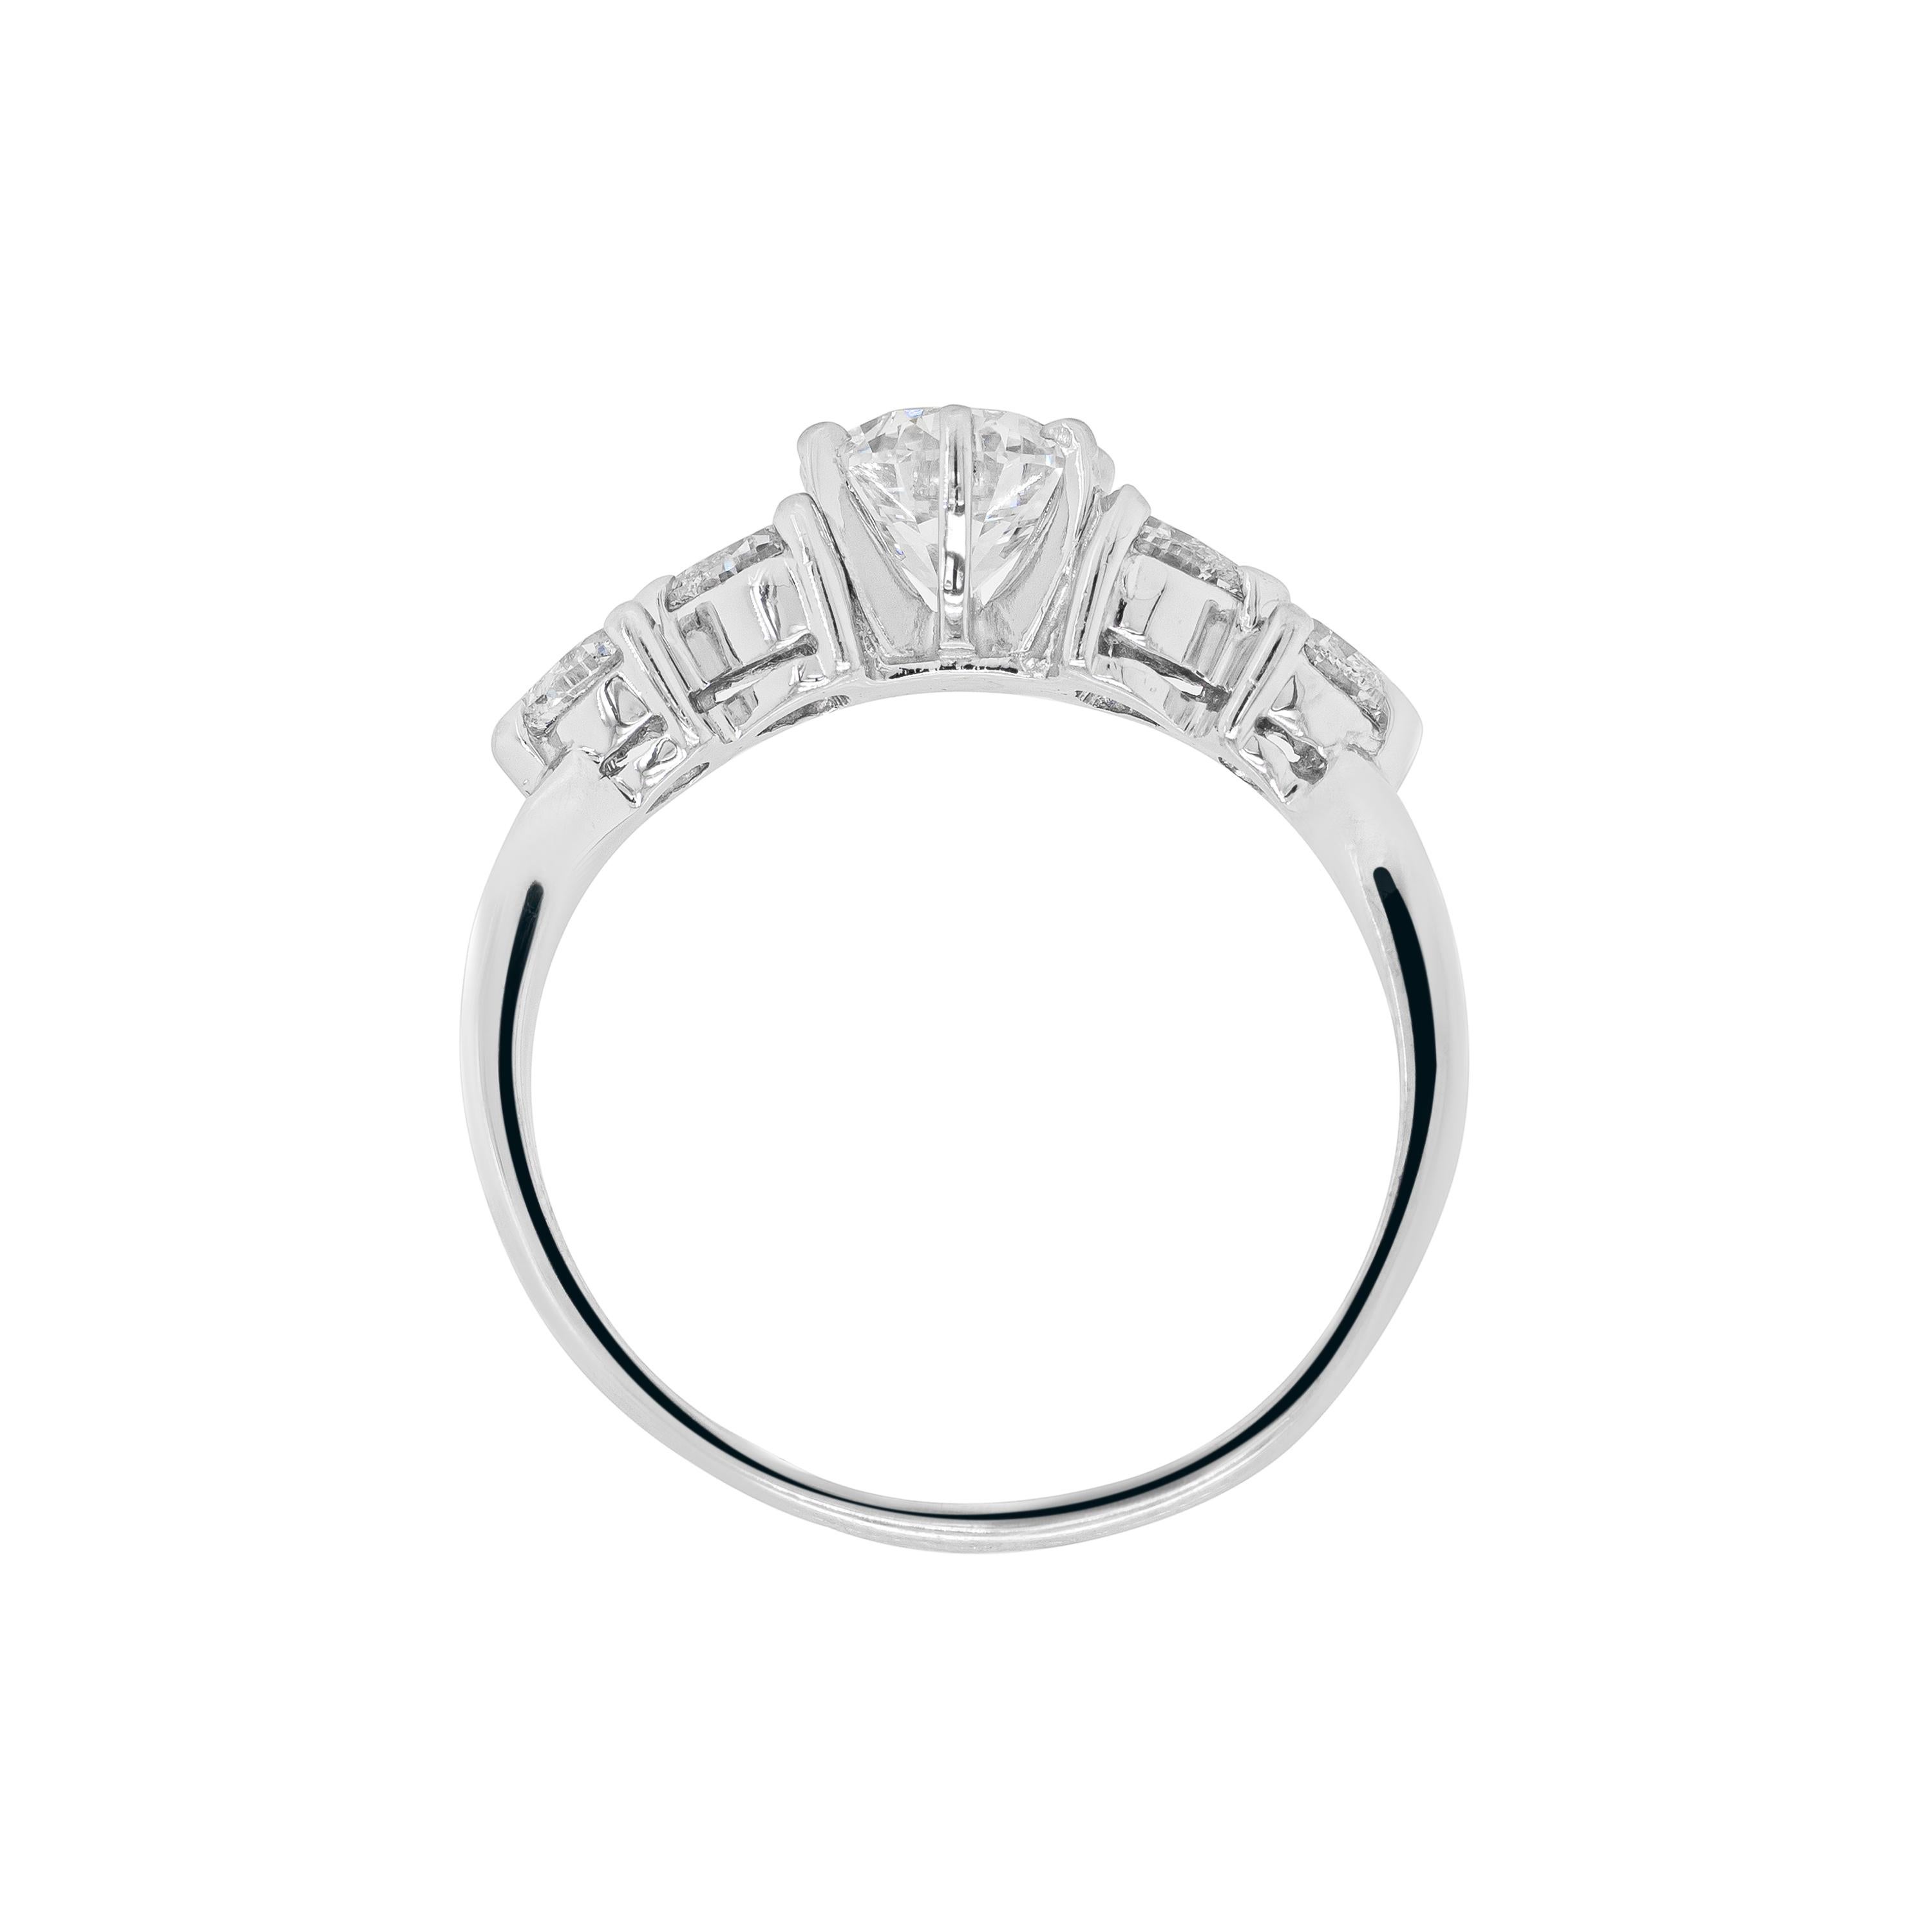 Dieser wunderschöne Verlobungsring hat ein wunderschönes Design mit einem 0,90ct runden Diamanten mit Brillantschliff, zertifiziert in der Farbe H und in der Reinheit VS1, der in der Mitte in einer Fassung mit sechs Krallen und offener Rückseite